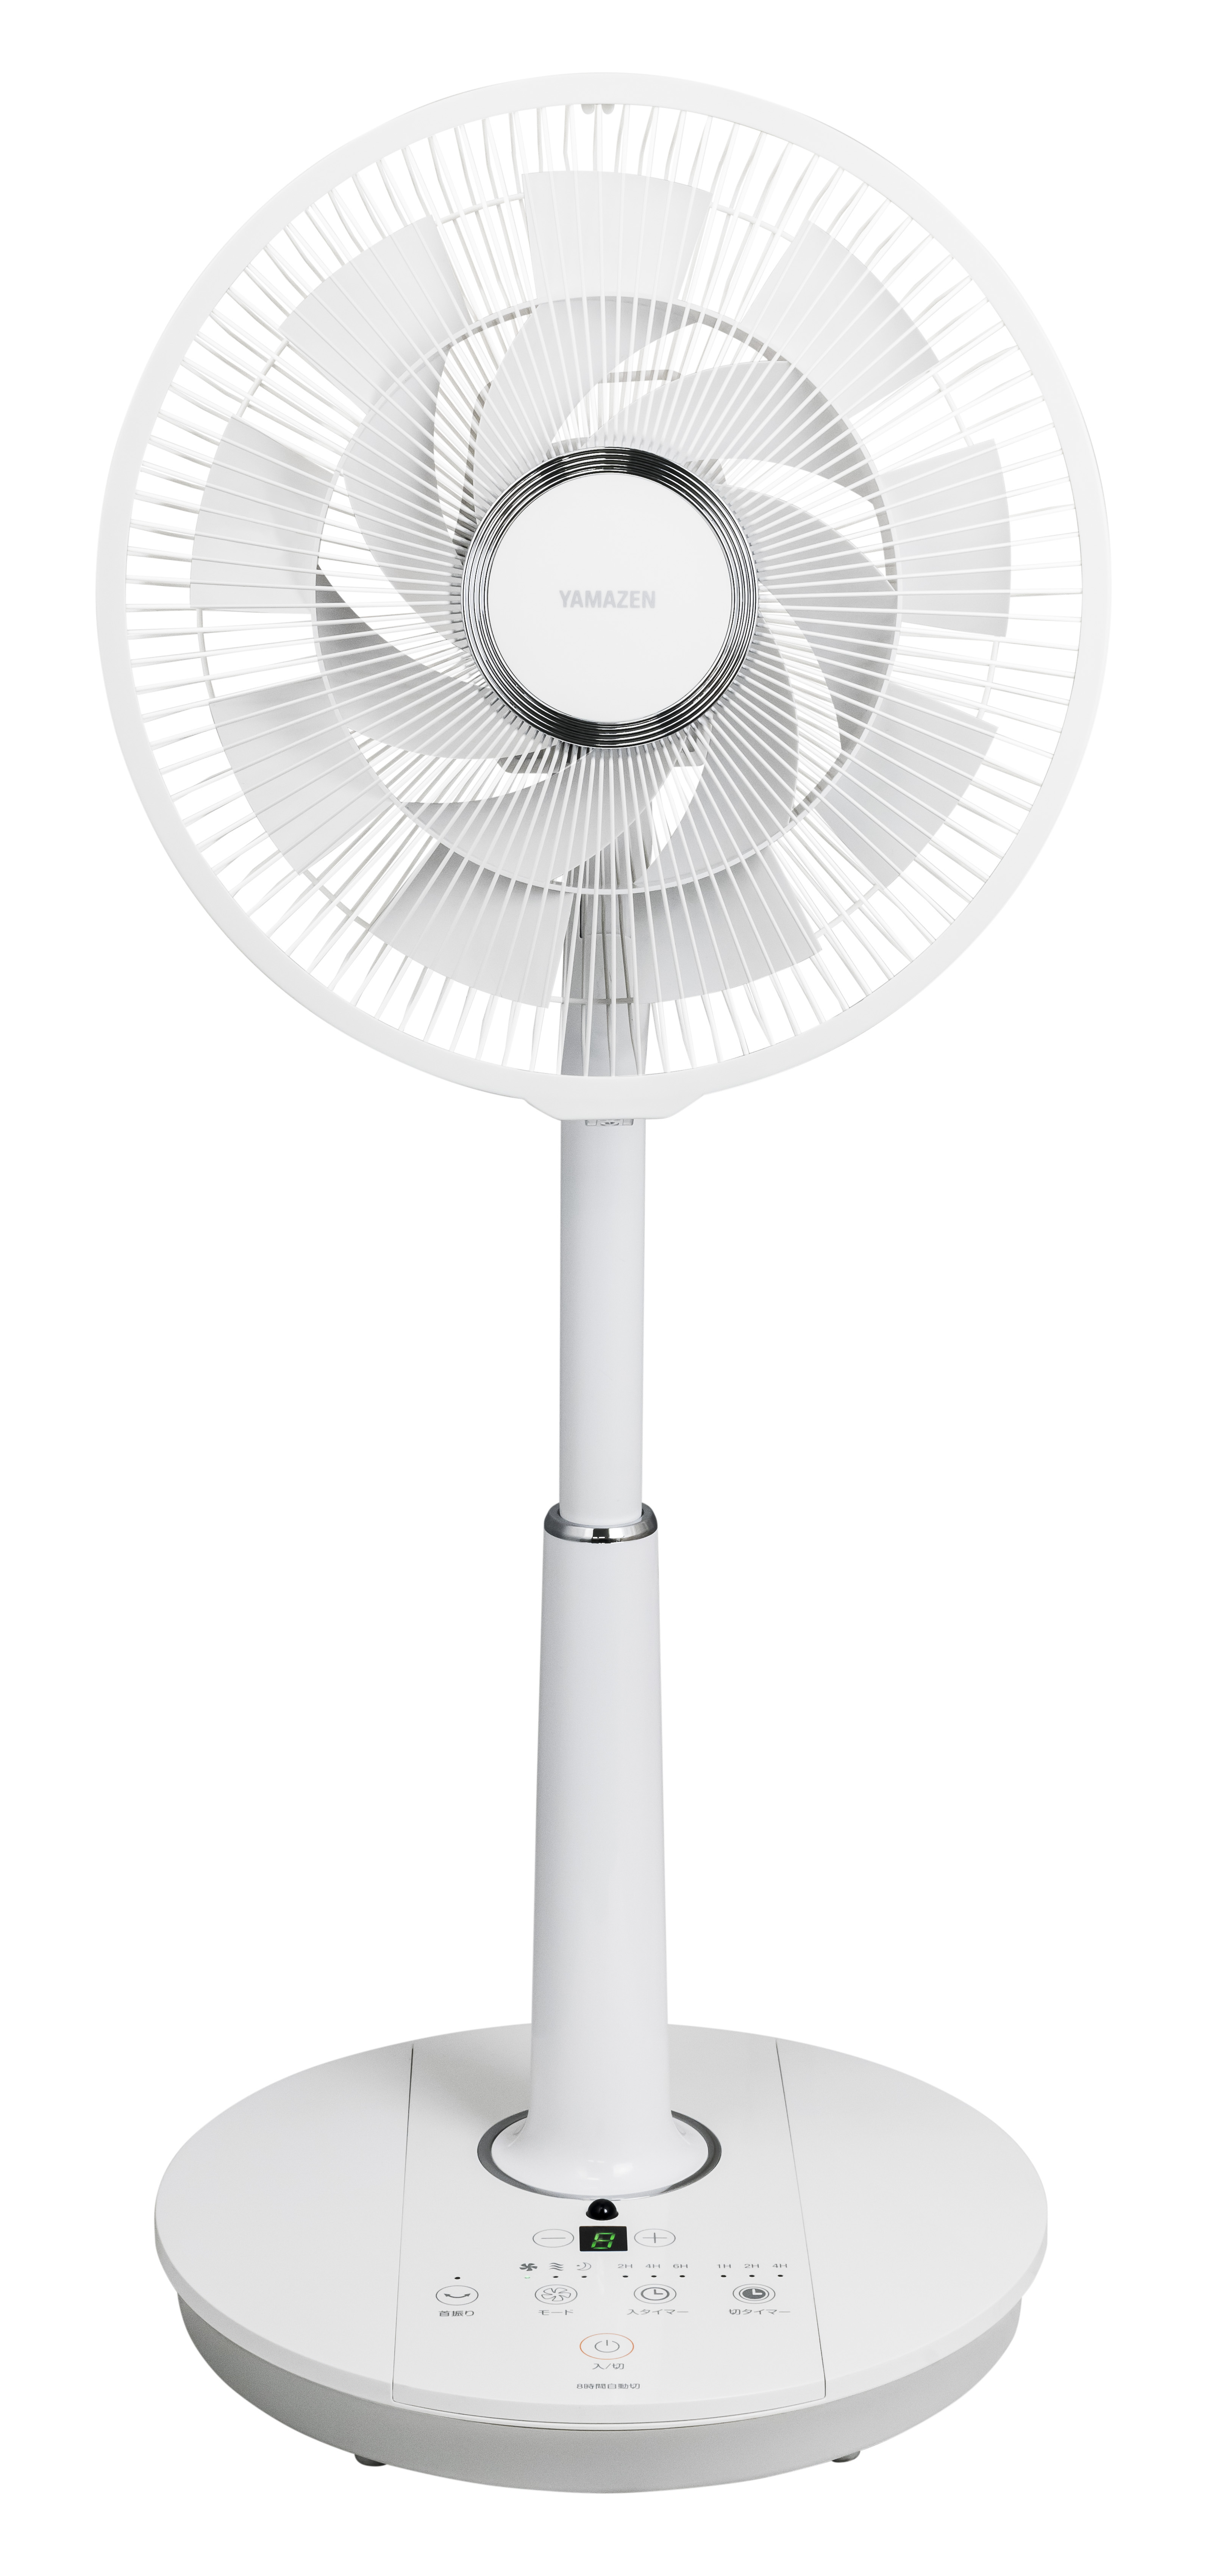 2019年YAMAZENオリジナル扇風機を4月上旬から順次発売！～家や外出先、オフィスなど色々な場所で利用できる扇風機のラインナップ～ -  SankeiBiz（サンケイビズ）